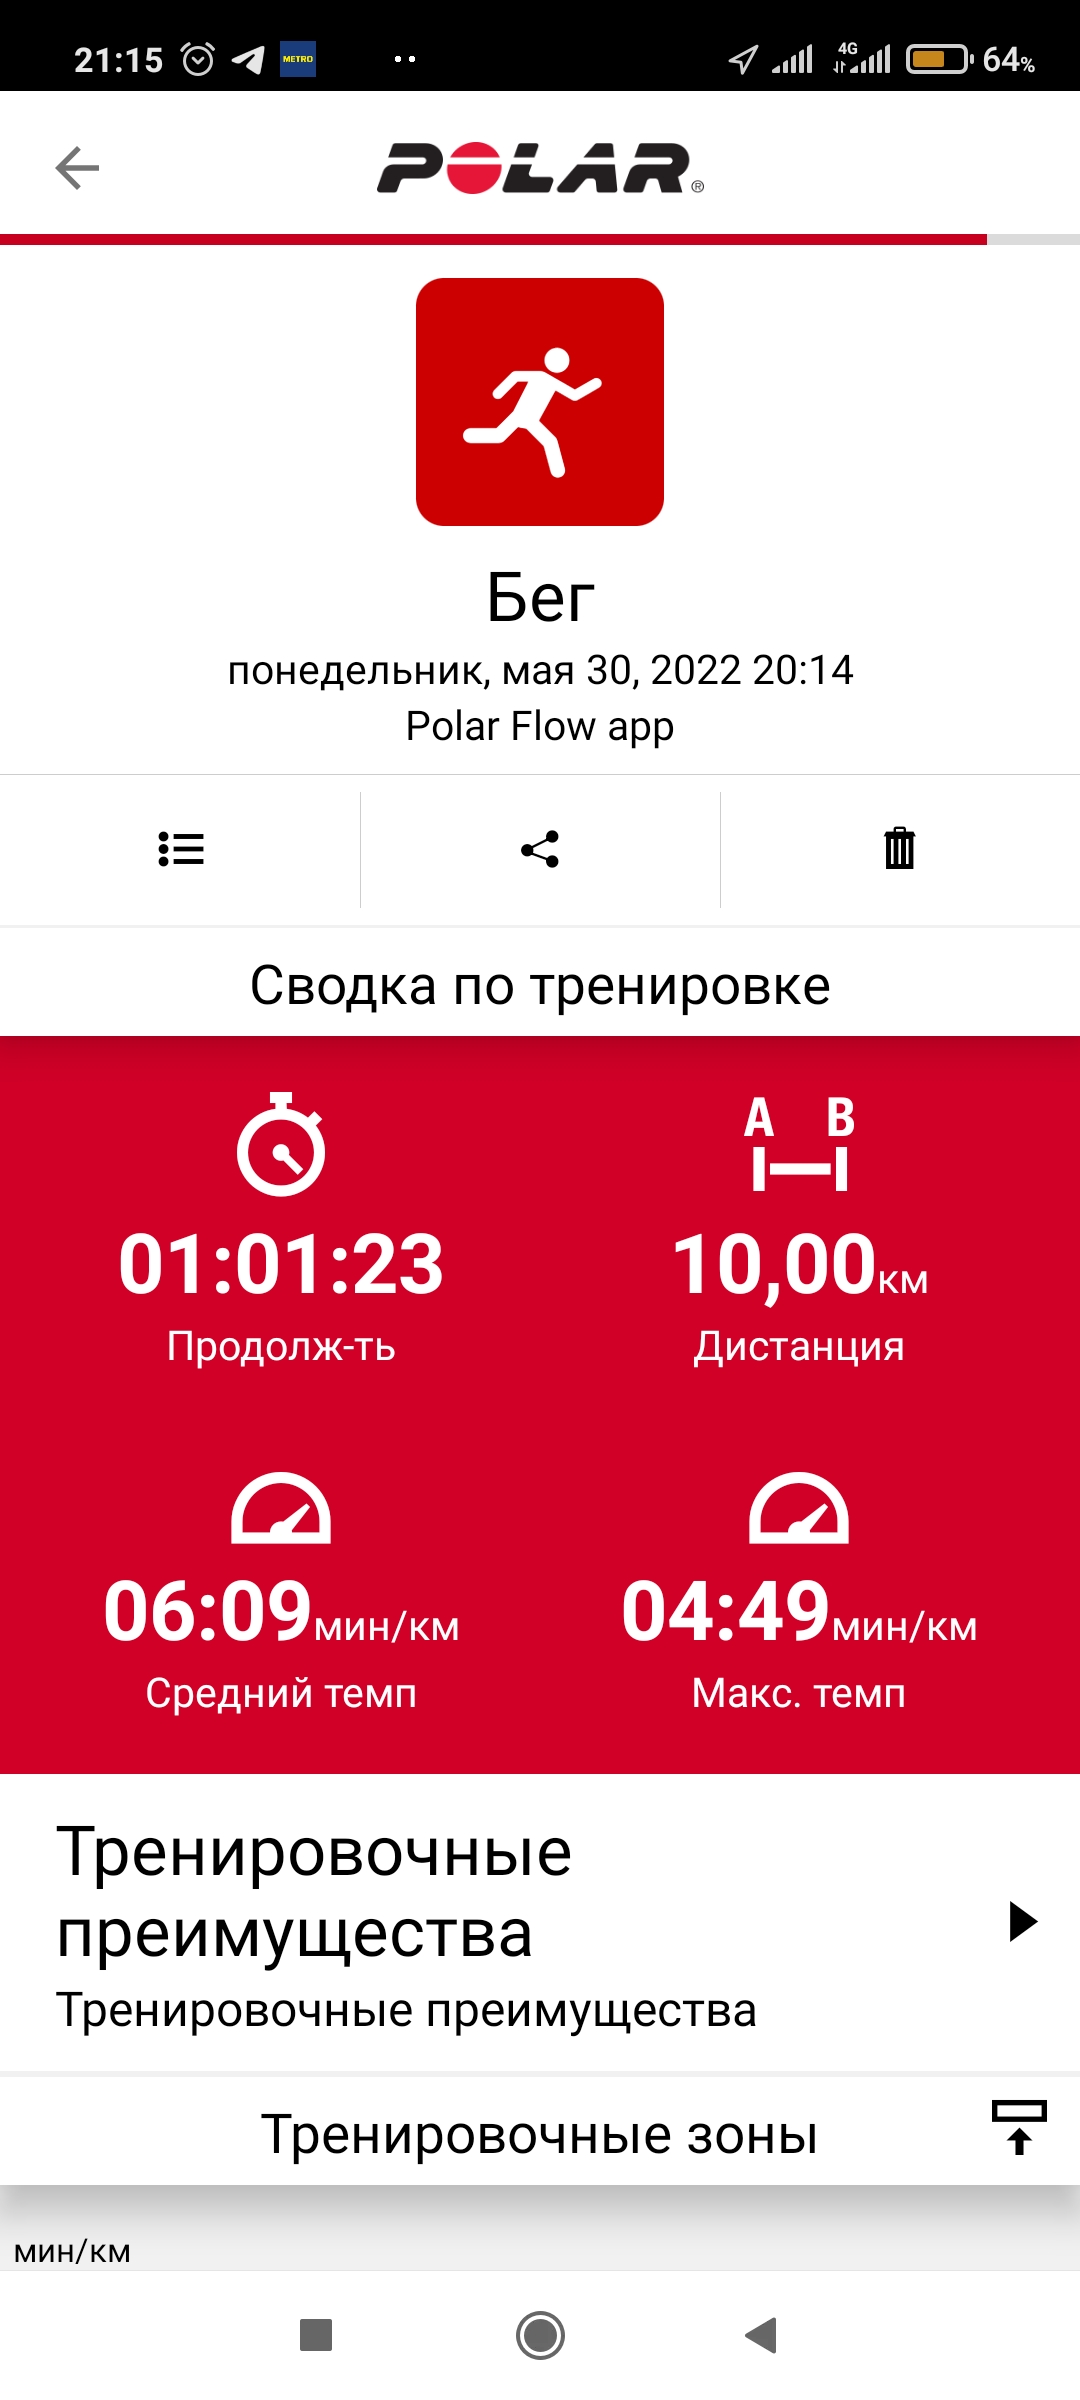  Загрузка от 30.05.2022 00:00:00 Голиков Александр 